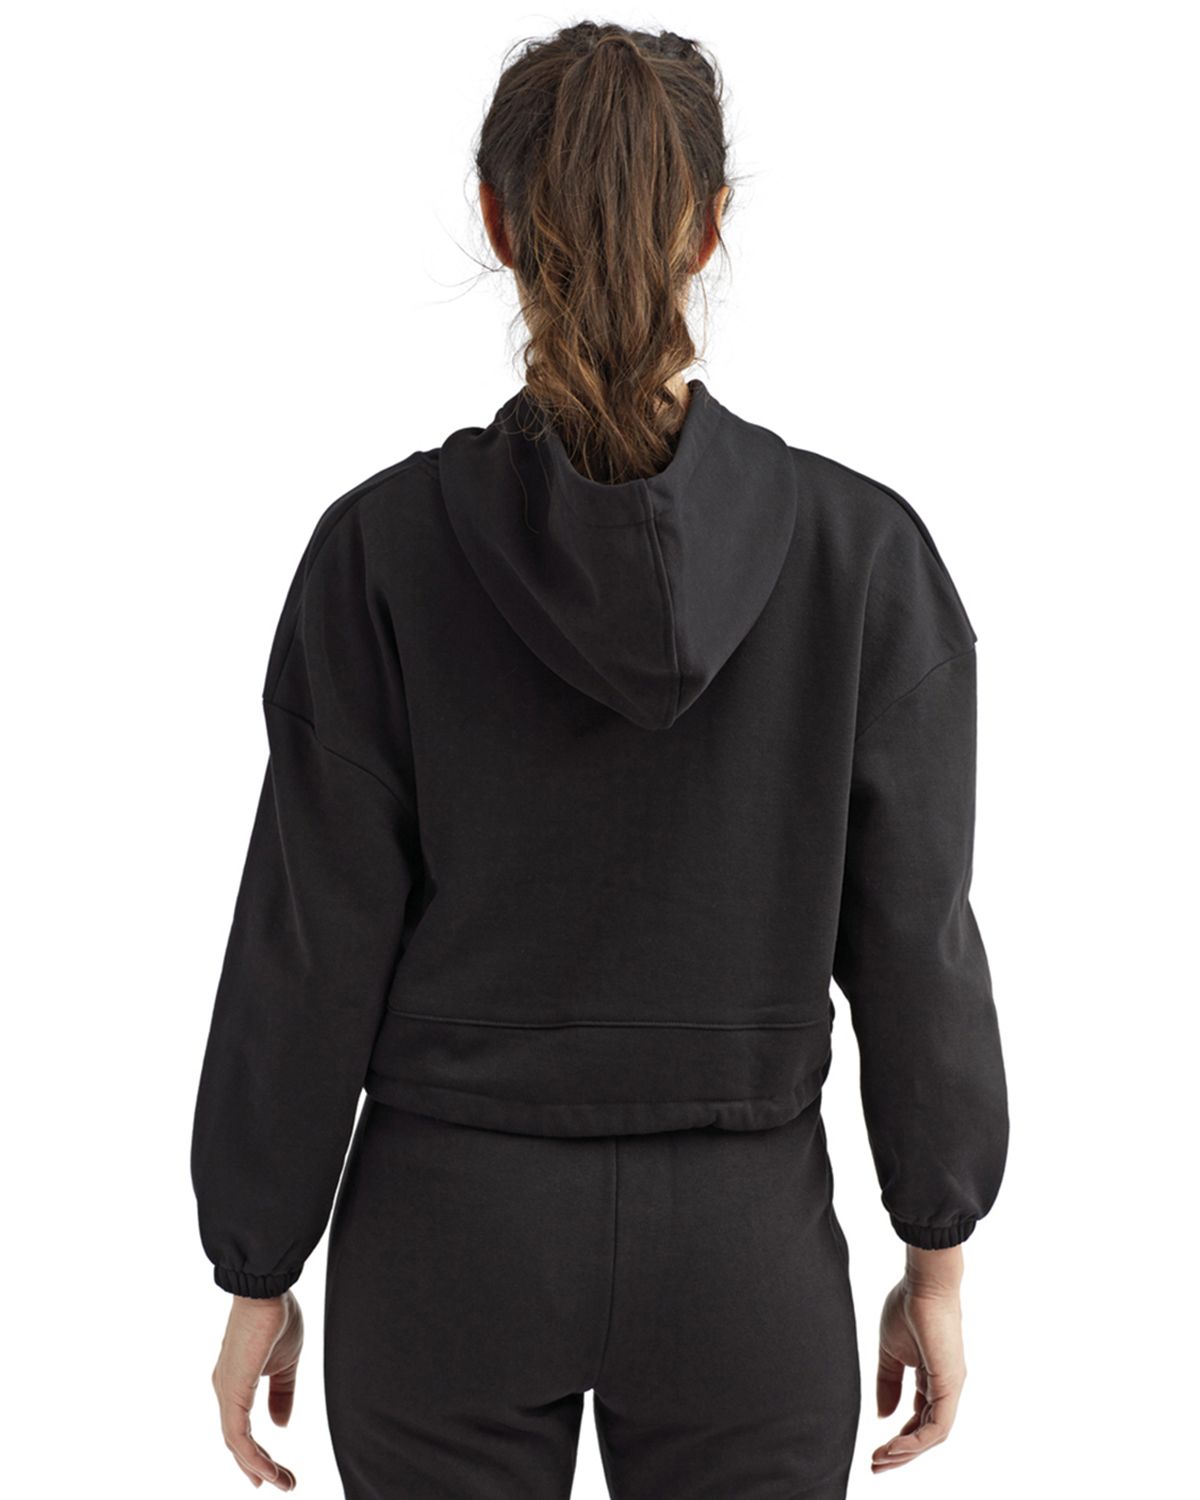 Wholesale Women's Cropped Long Sleeve Hoodie Sweatshirts